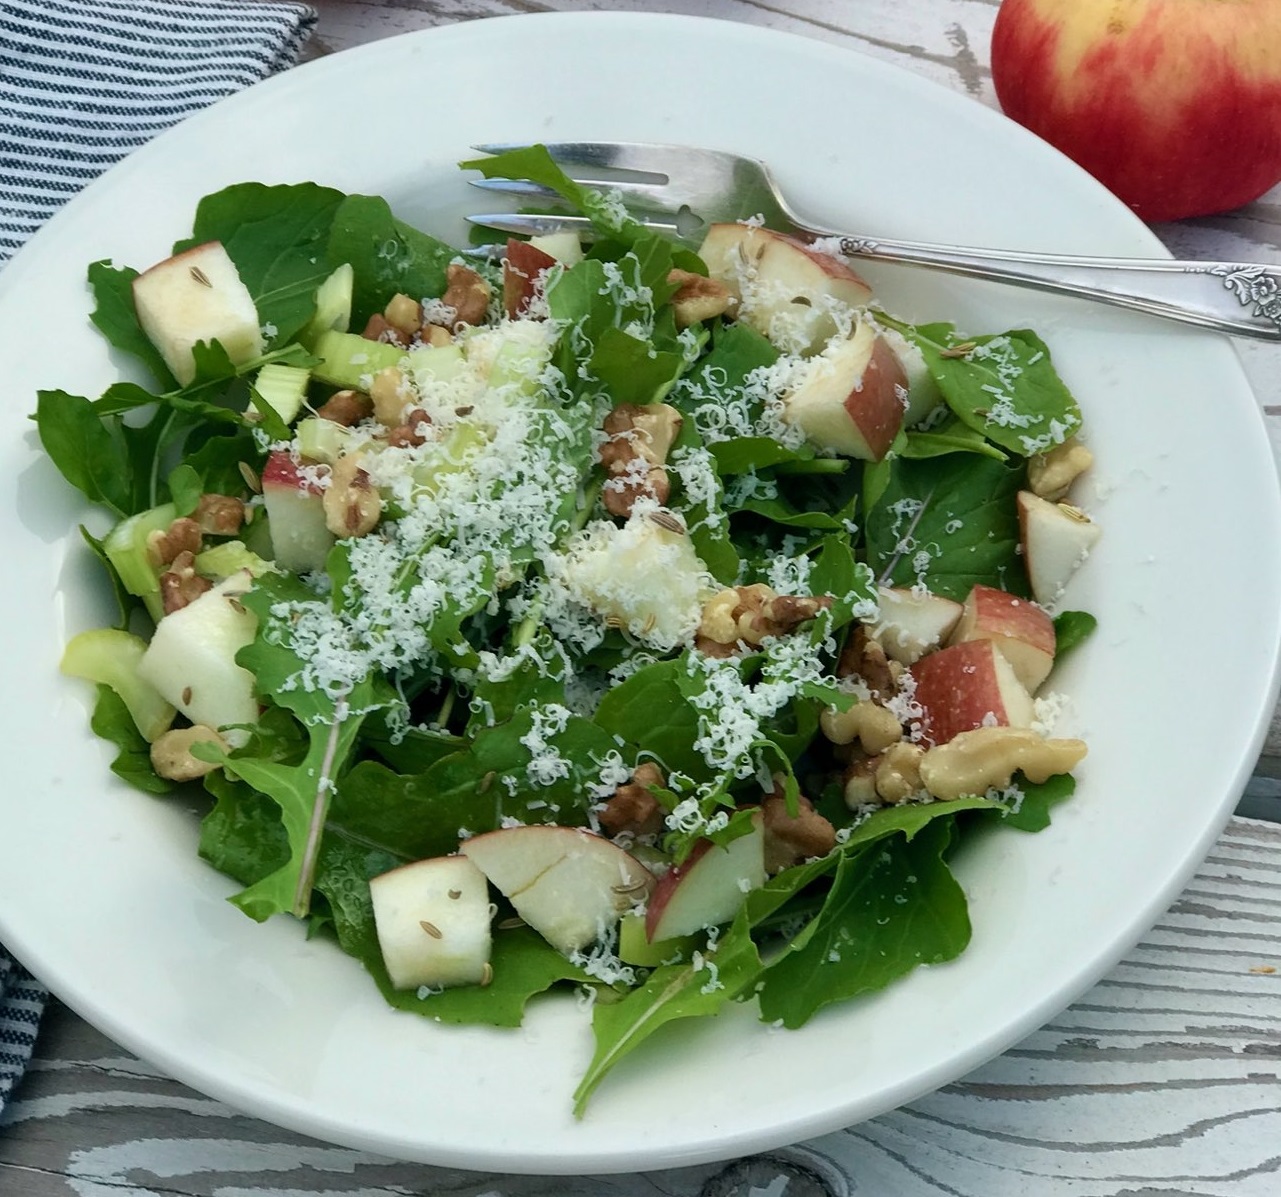 Apple Arugula Salad with Fennel Seeds & Walnuts